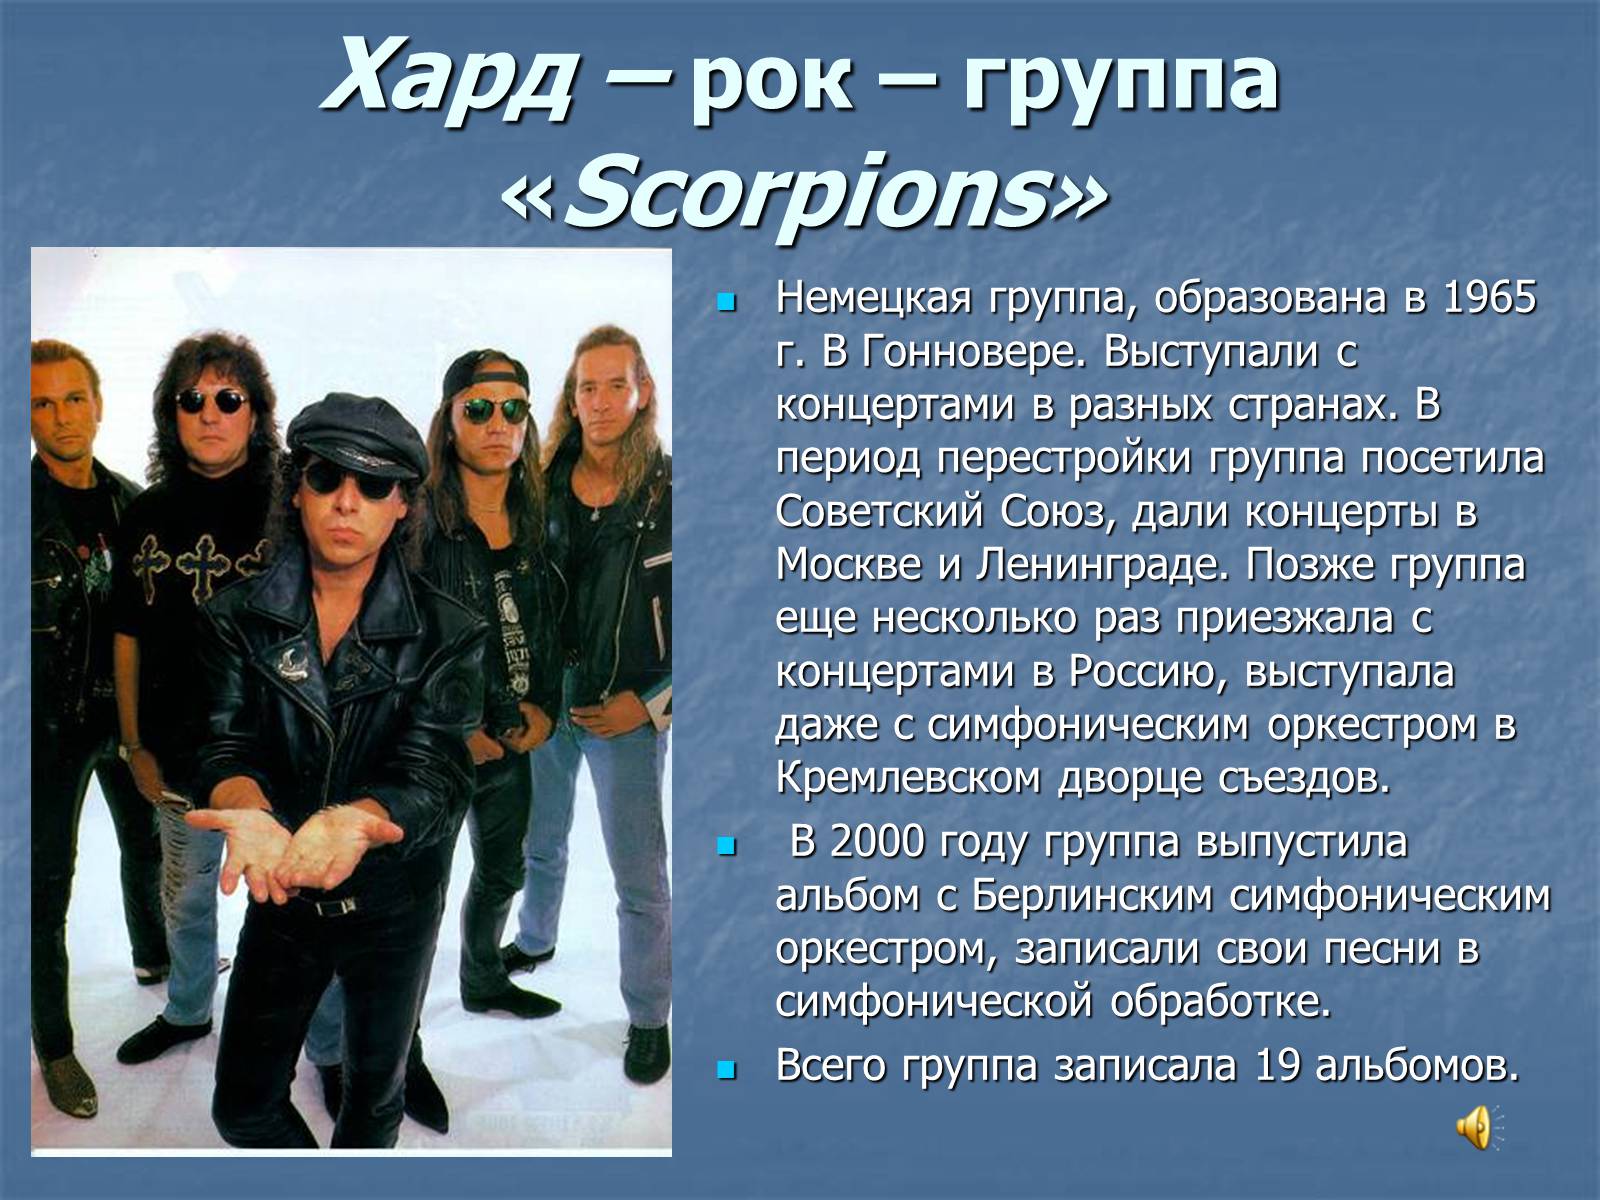 Сообщение о группе скорпионс